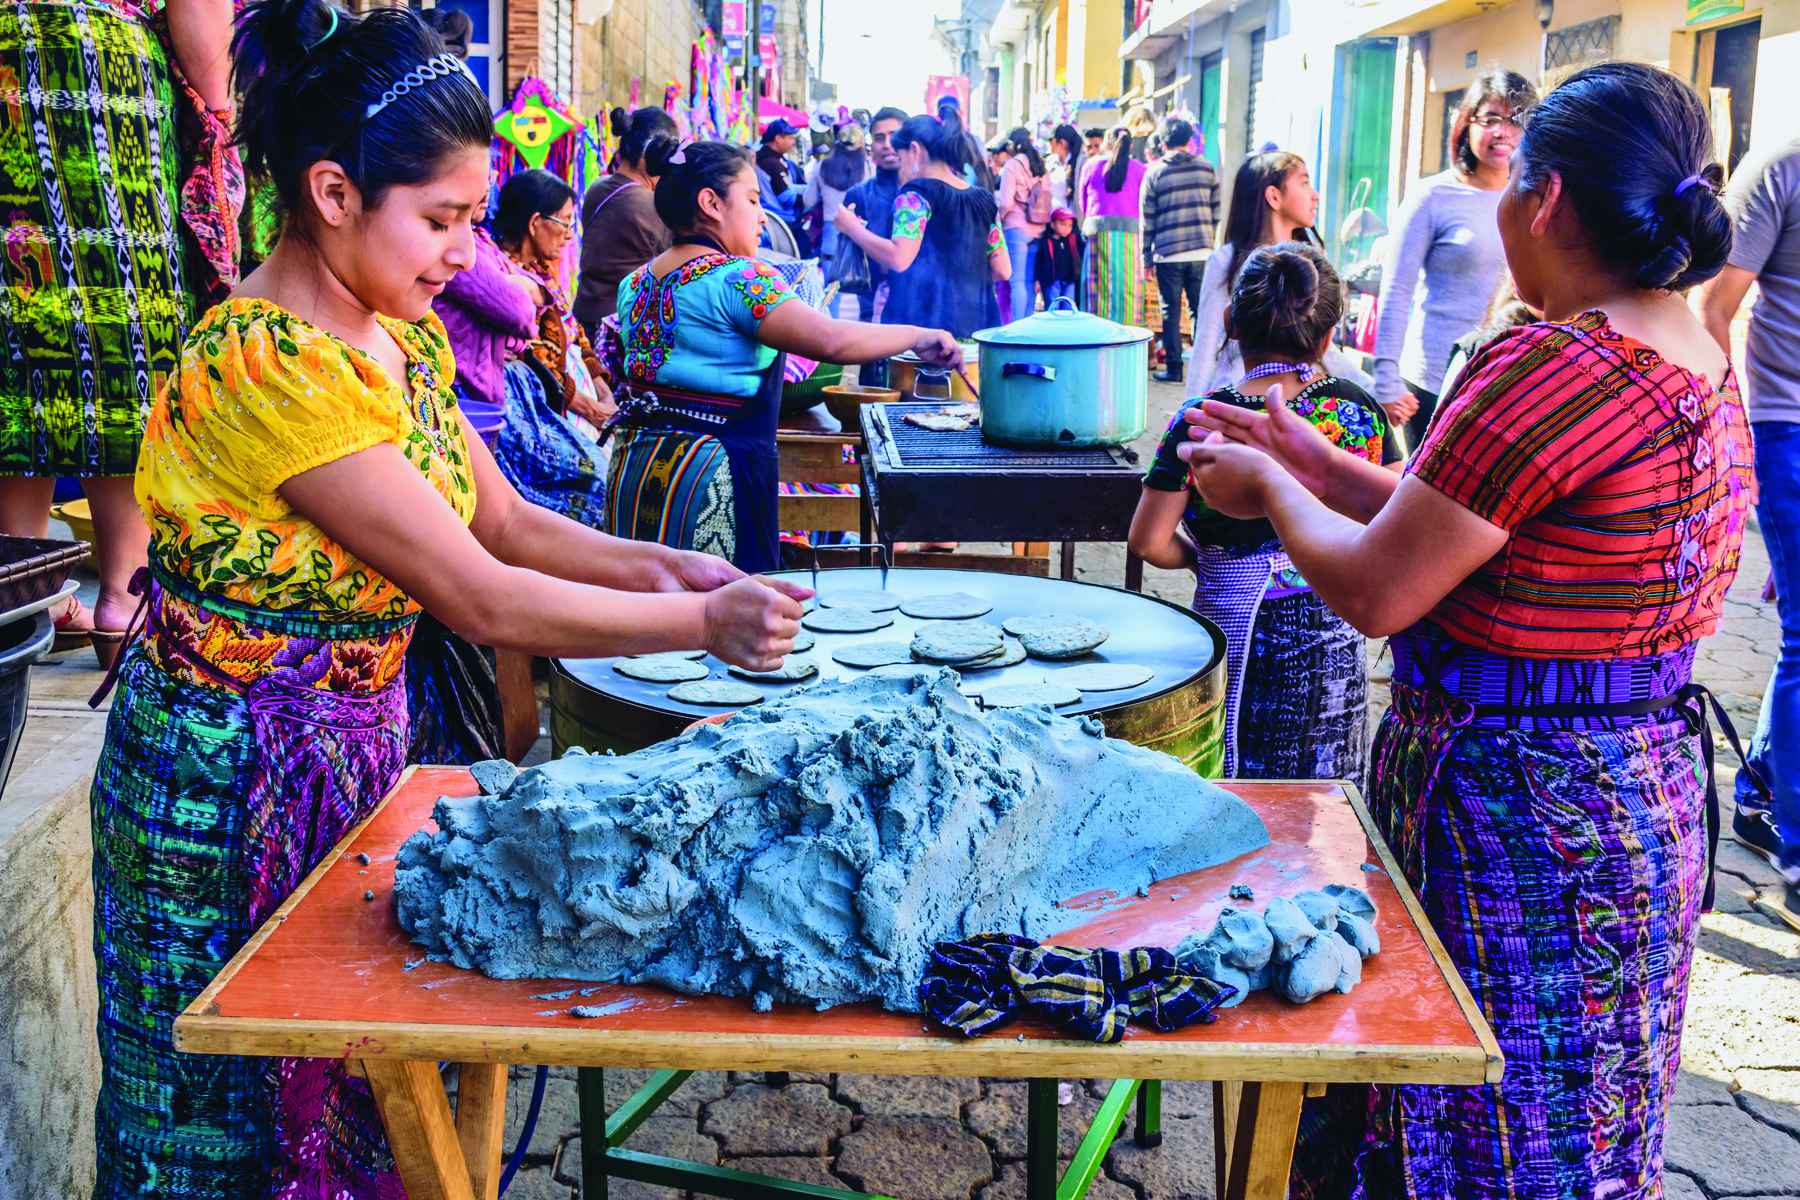 Fotografia. Uma rua de comércio popular abarrotada de pessoas. Destaque para duas mulheres preparando massas finas e arredondadas, com o auxílio das mãos.